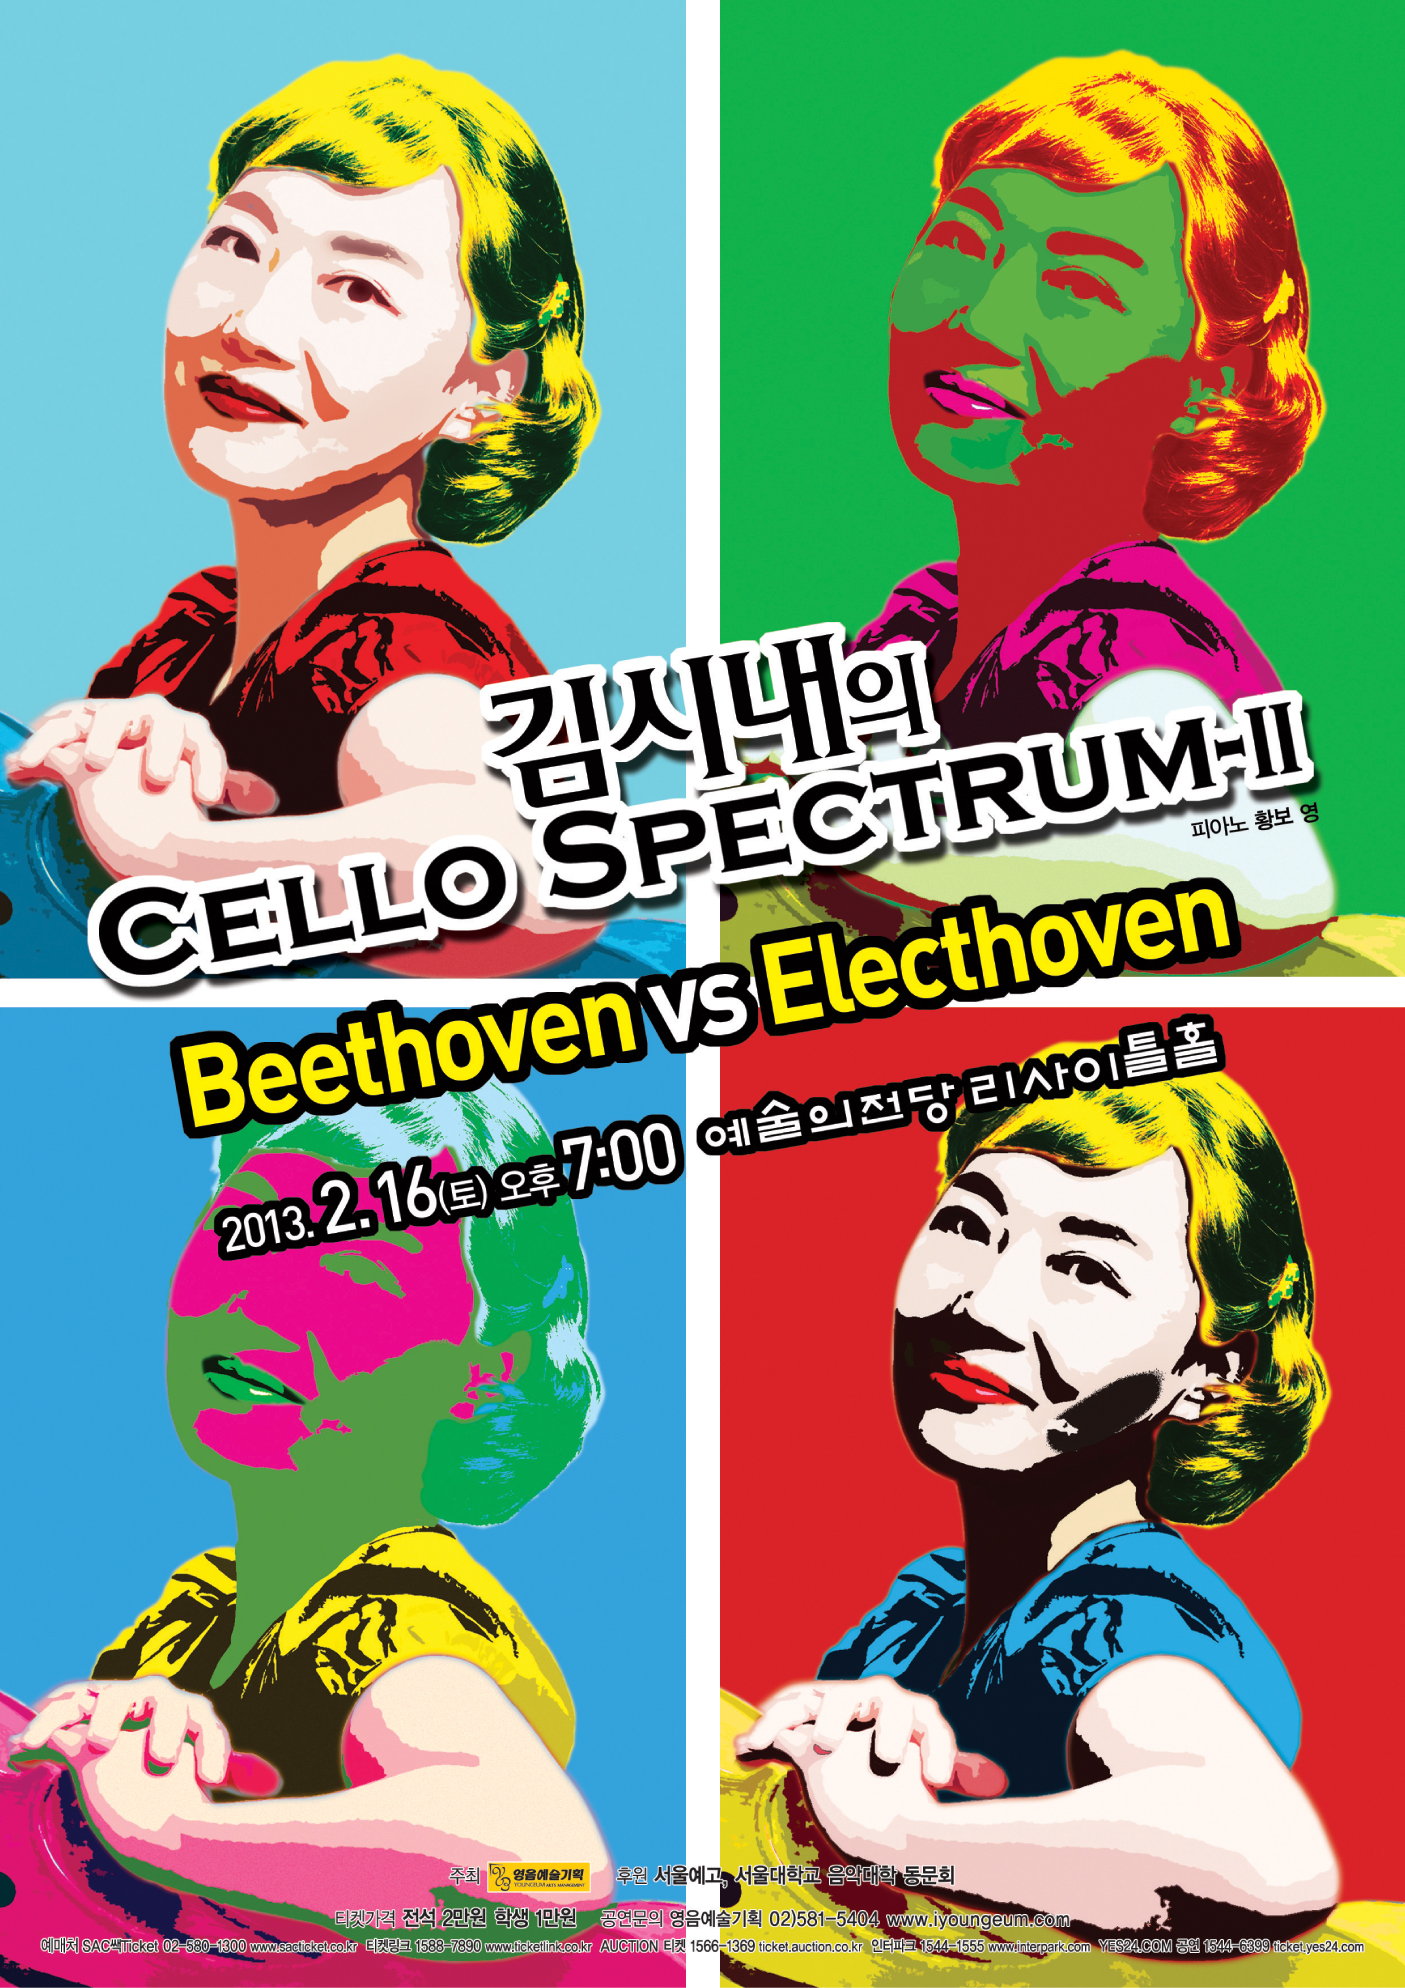 [2월 16일] 김시내의 첼로 스펙트럼-Ⅱ “Beethoven vs Electhoven”  이미지